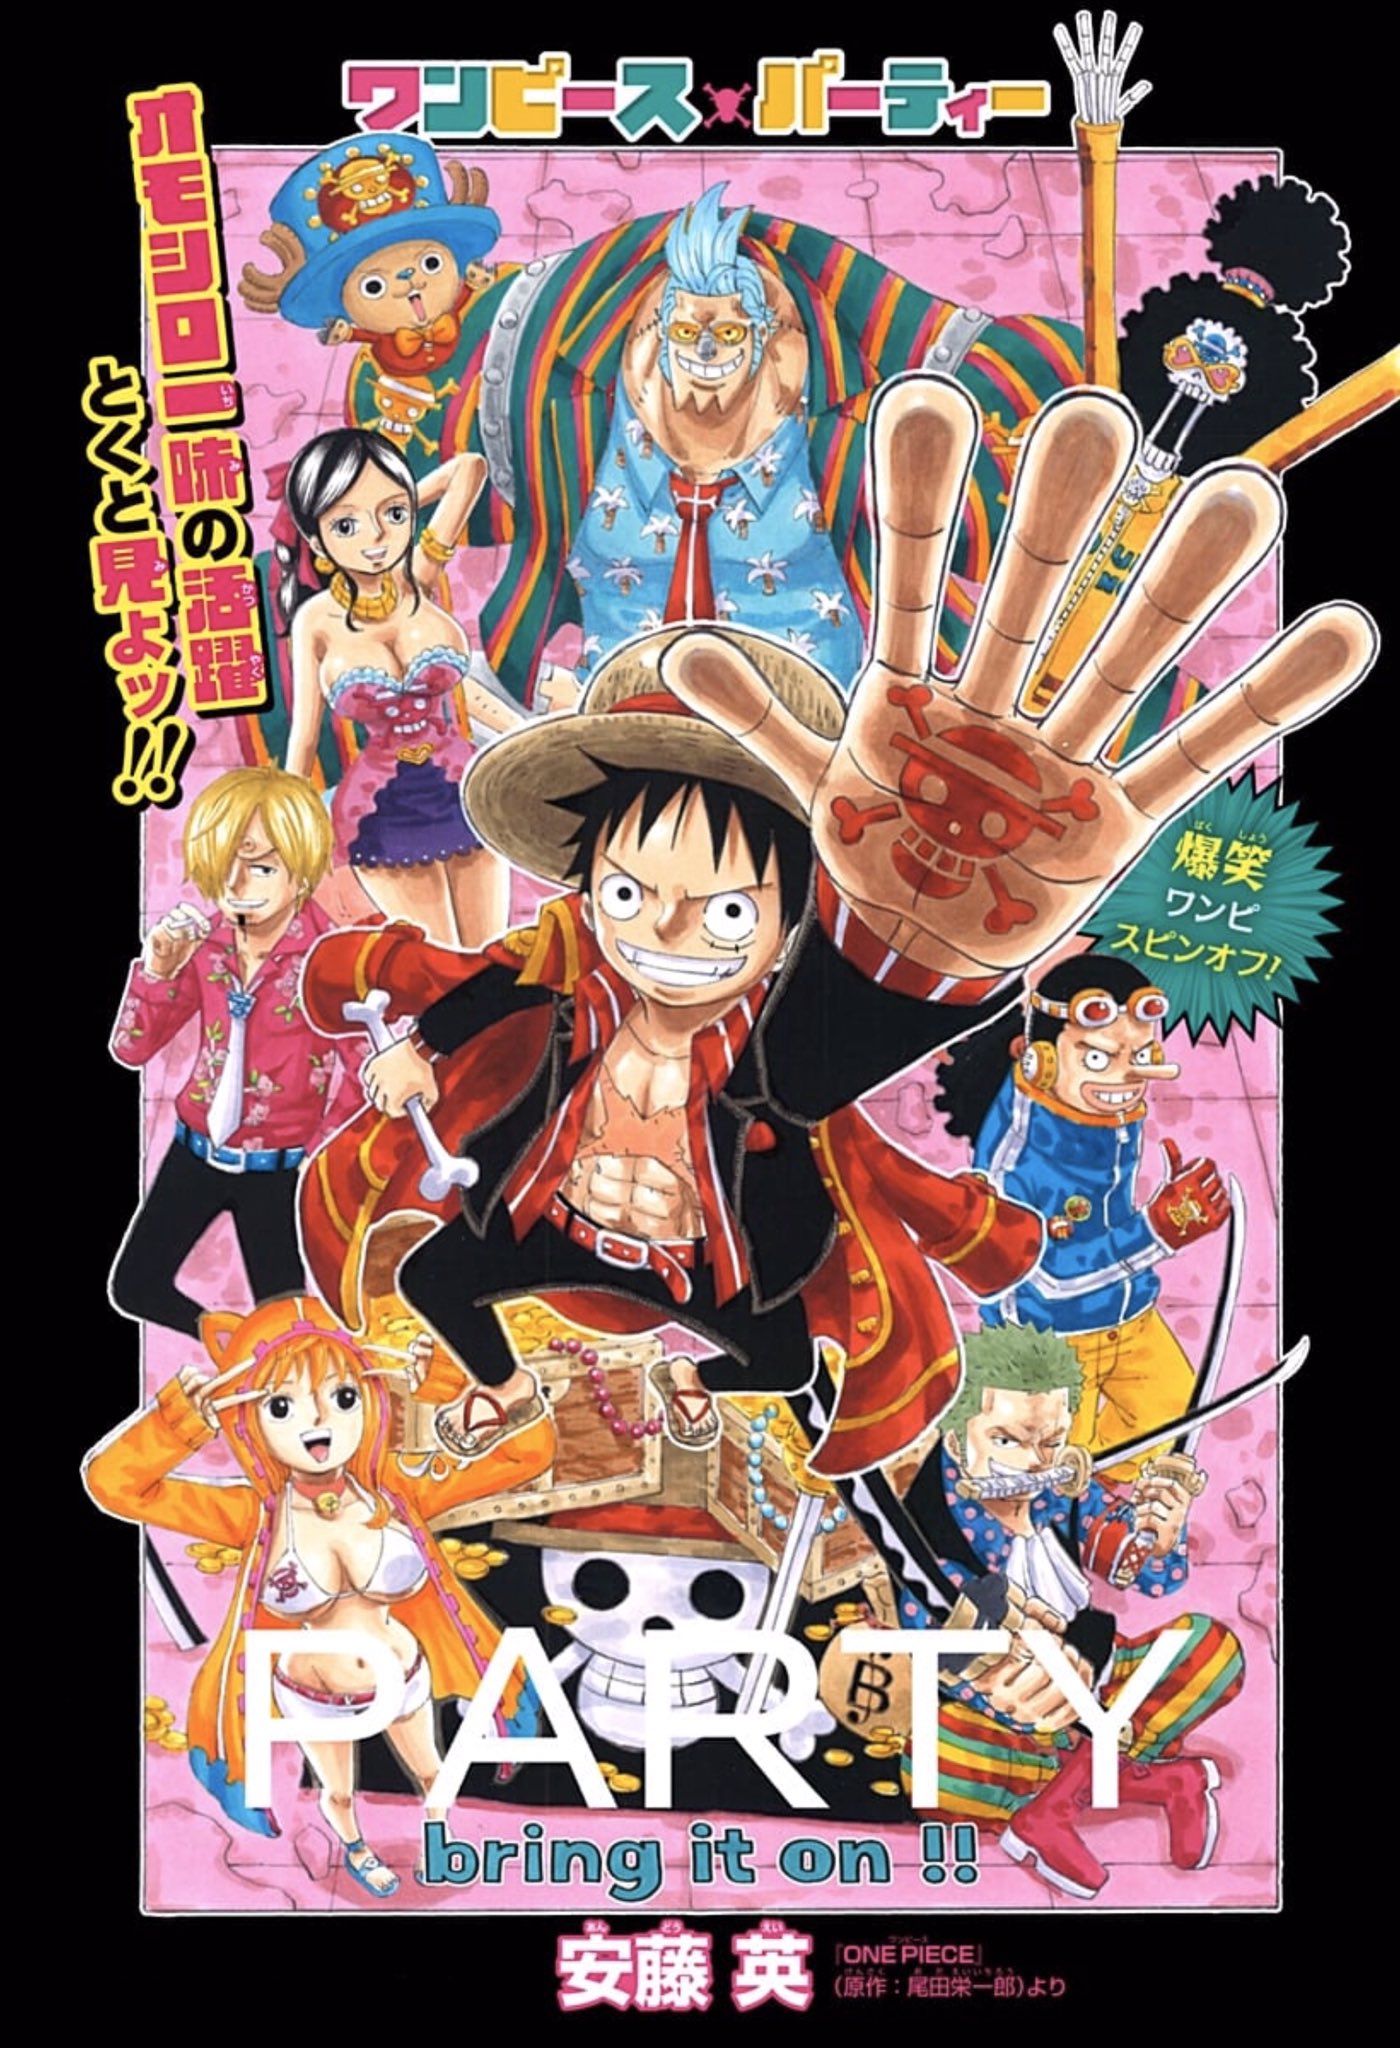 One Piece スタッフ 公式 Official Twitterissa ジャンプ では One Piece 1巻 61巻を無料公開しているほか スピンオフ漫画 ワンピースパーティー の最新話が本日公開 最新の6巻は笑盛りだくさんで 4月3日に原作96巻と同時発売するぞー